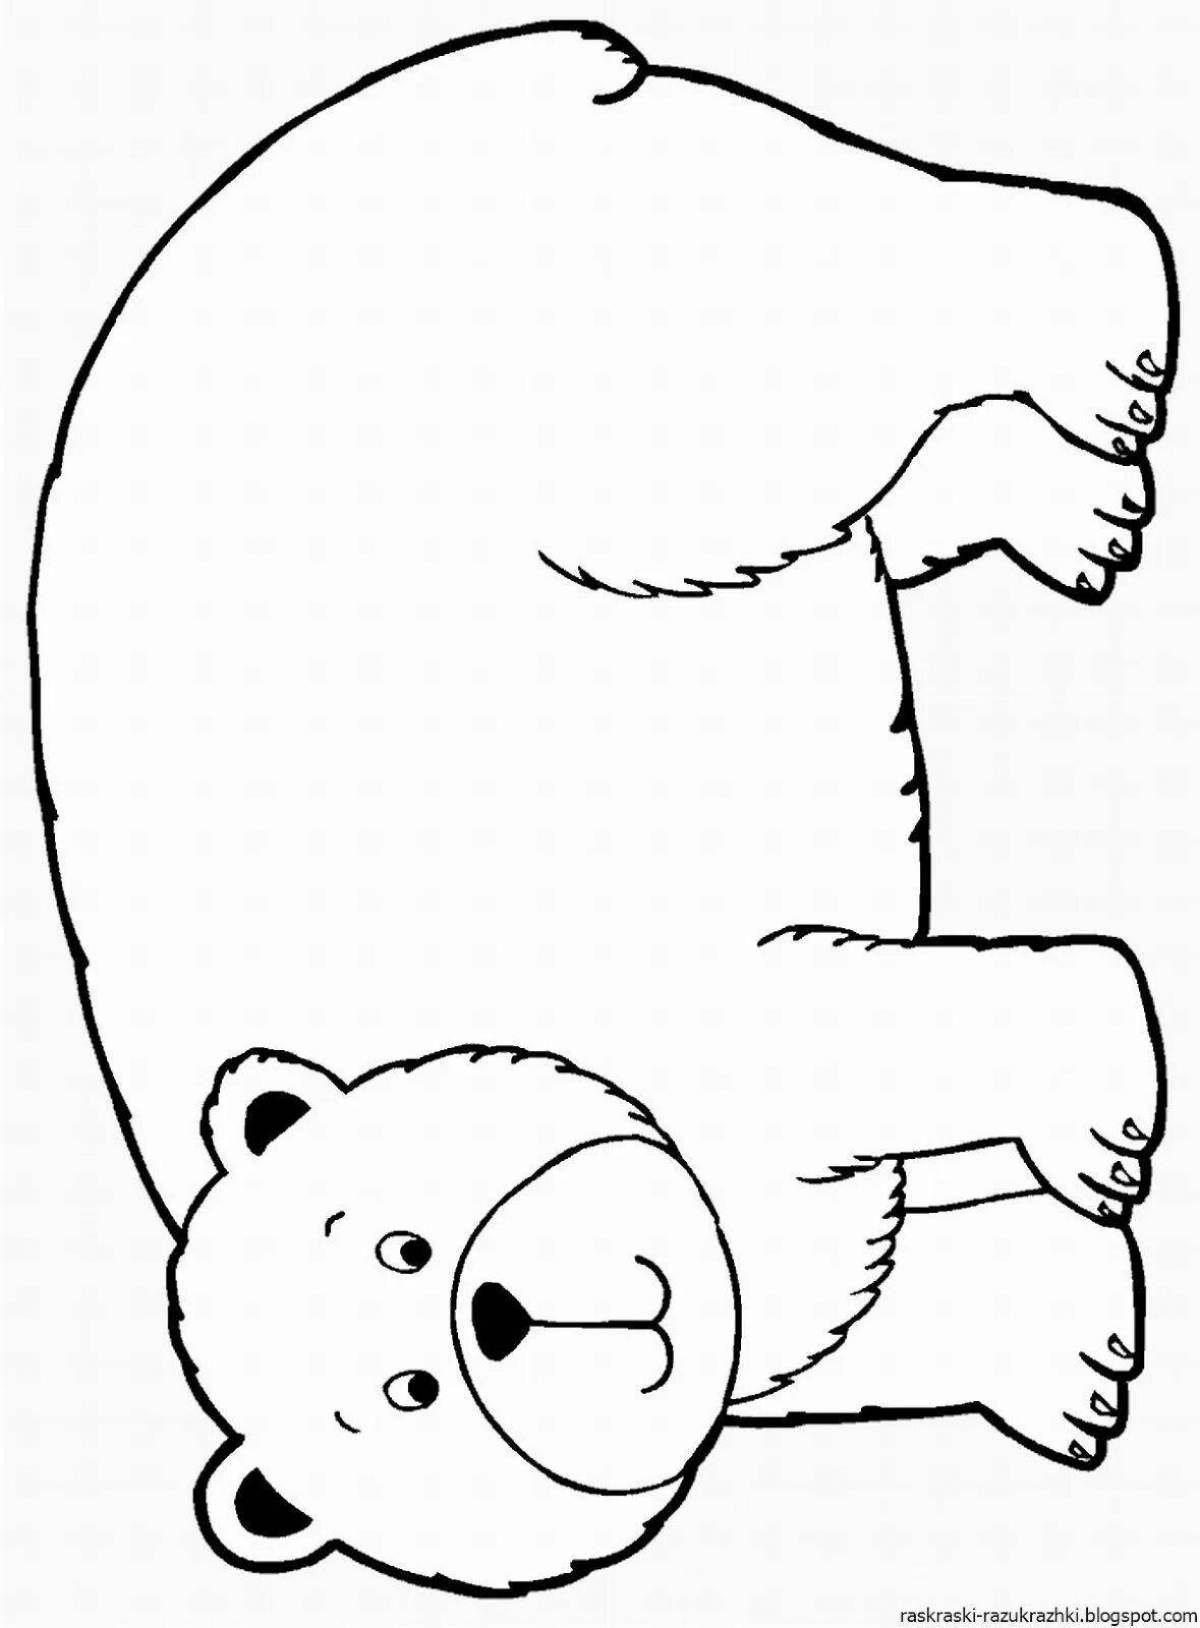 Раскраска дружелюбный медведь для детей 2-3 лет